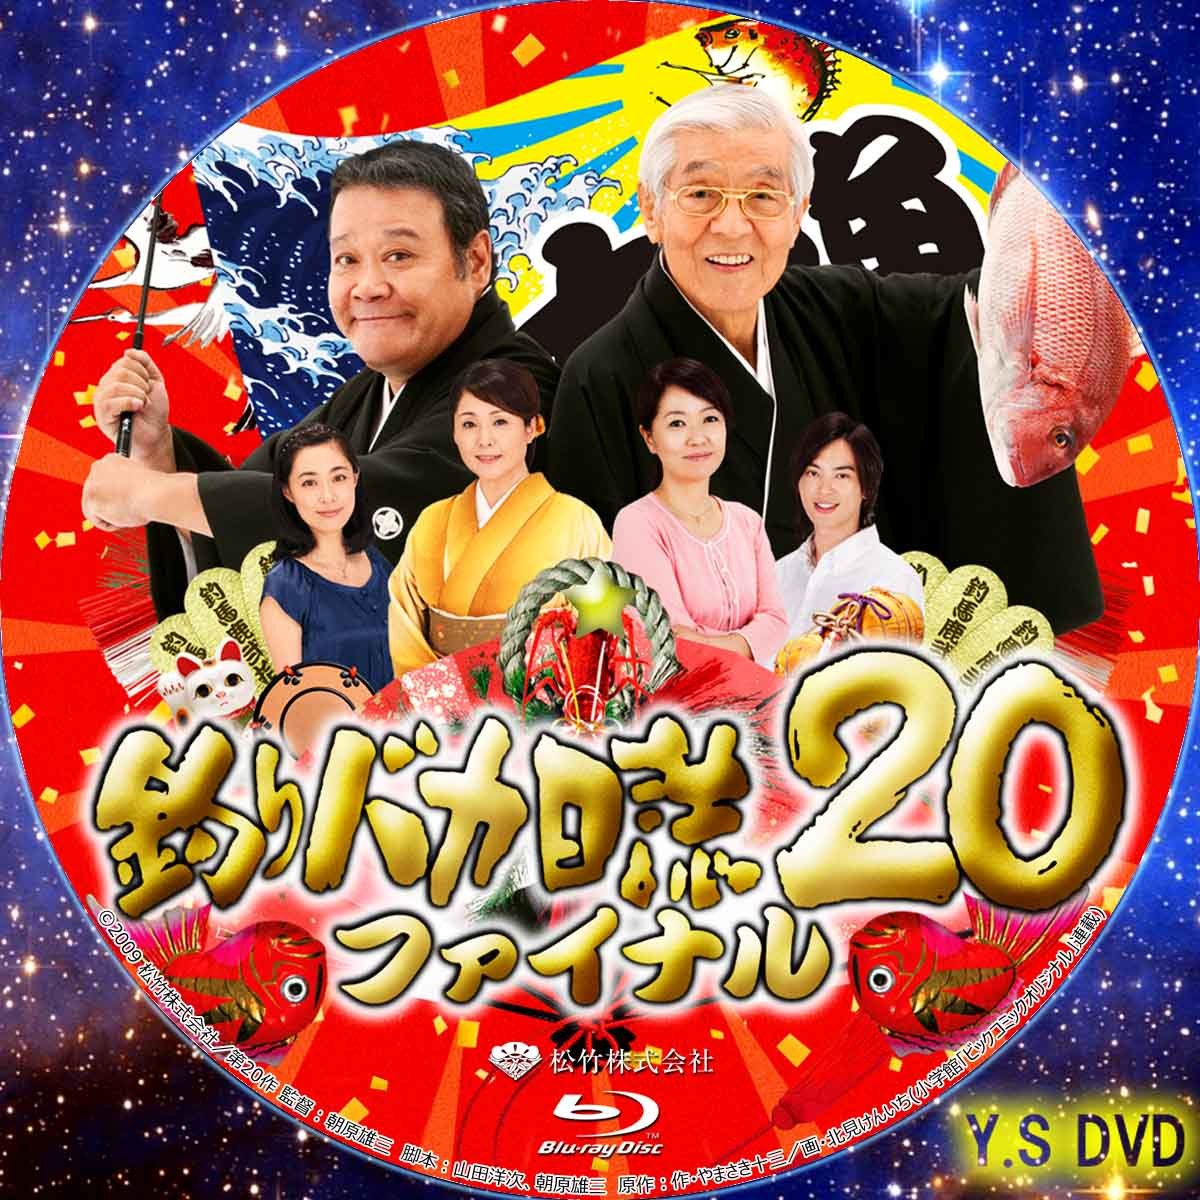 売り切り御免！】 釣りバカ日誌 20 ファイナル '09松竹 DVD レンタル